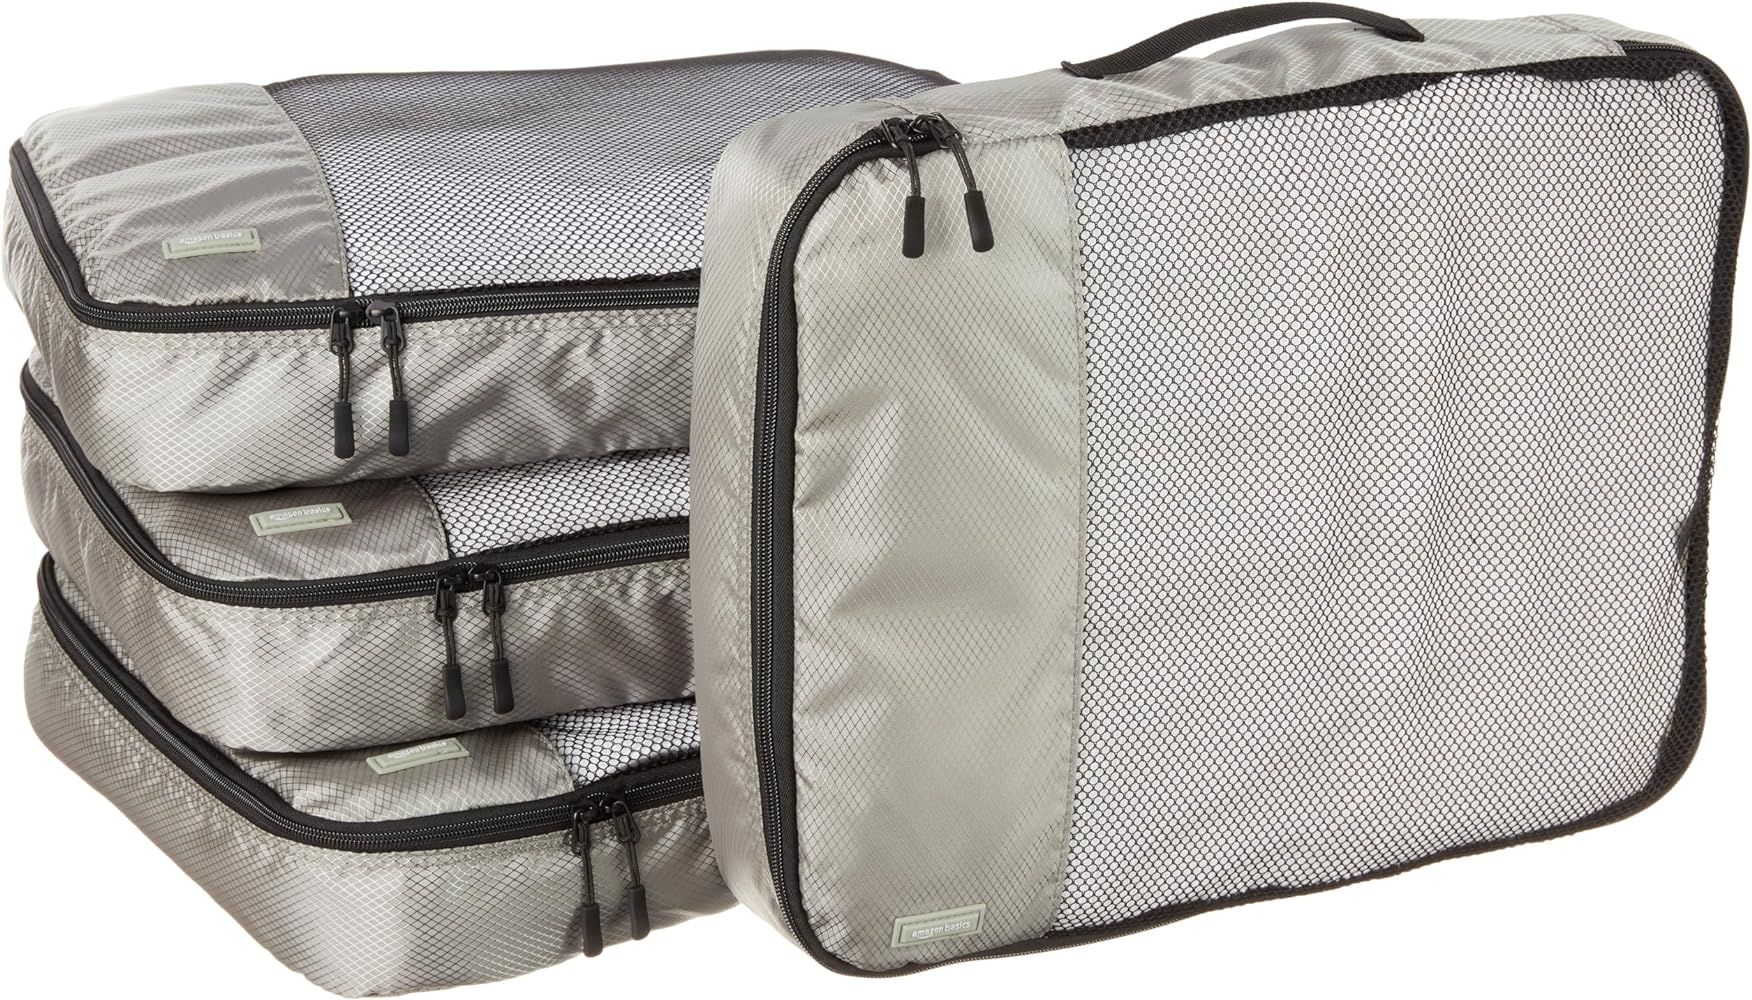 Amazon Basics 4 Piece Packing Travel Organizer Cubes Set, Zipper, Large, Gray | Amazon (US)